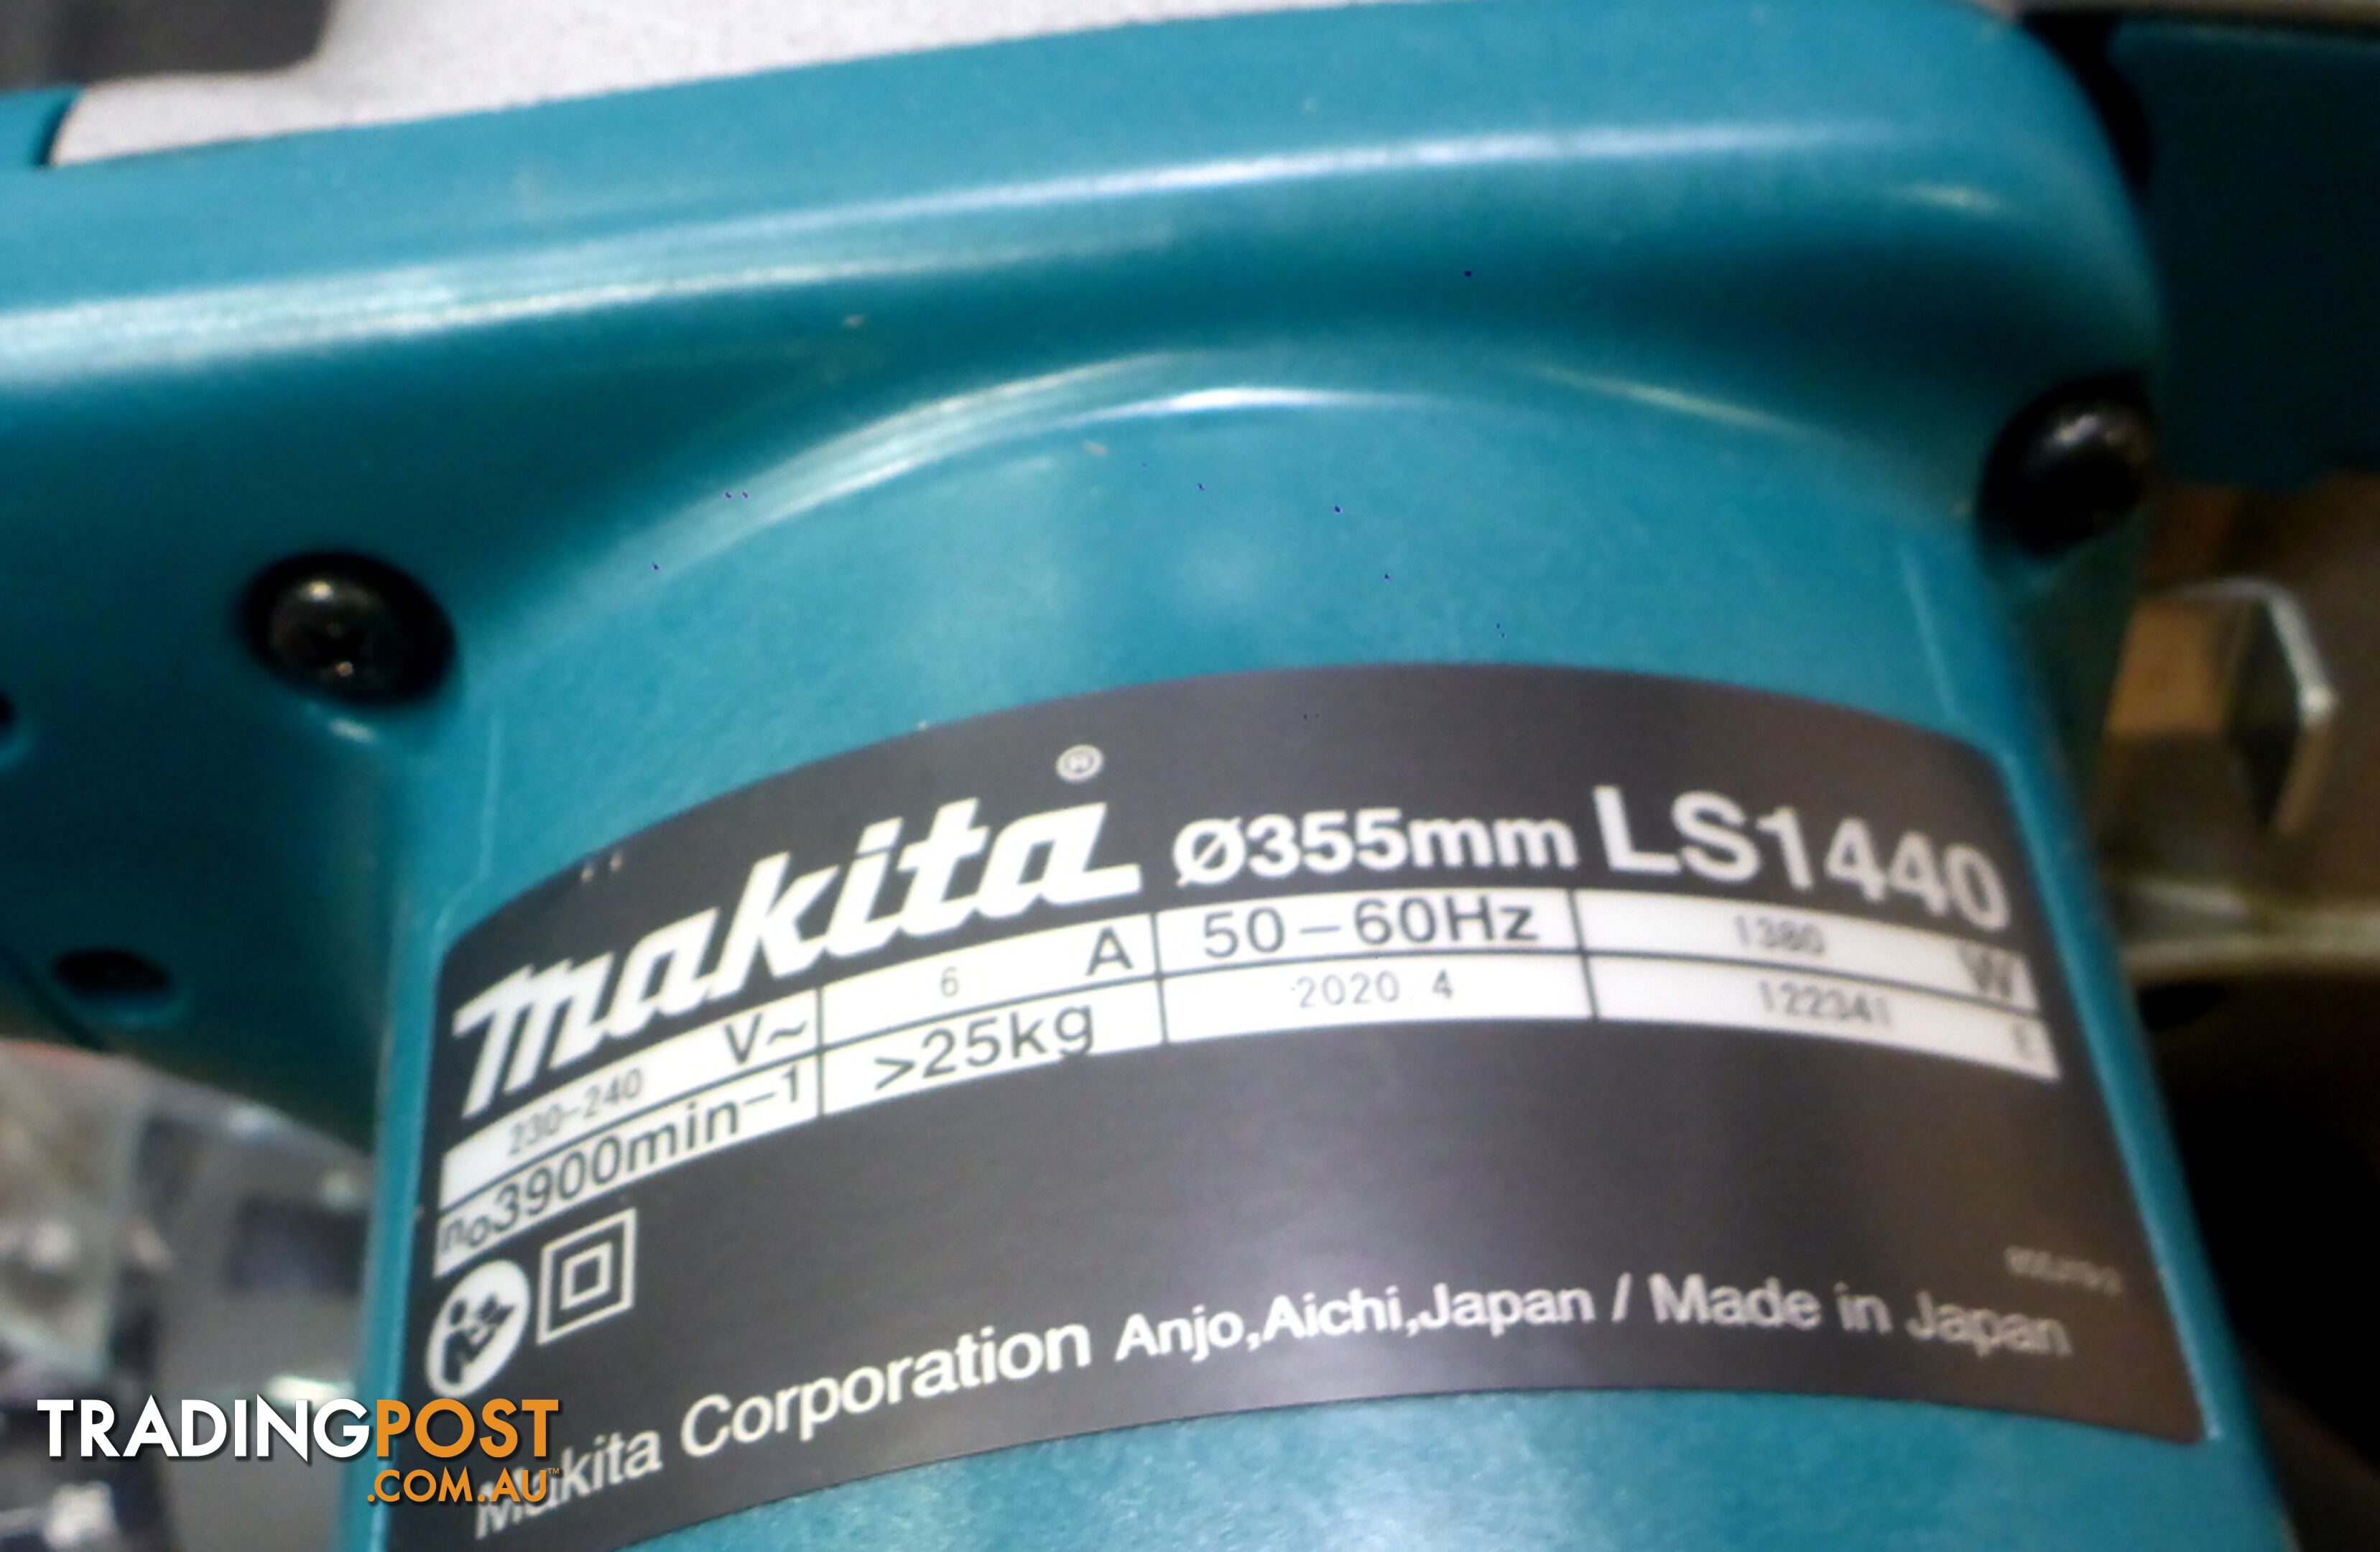 New Makita LS1440 355mm (14") Mitre Drop Saw $760 off RRP